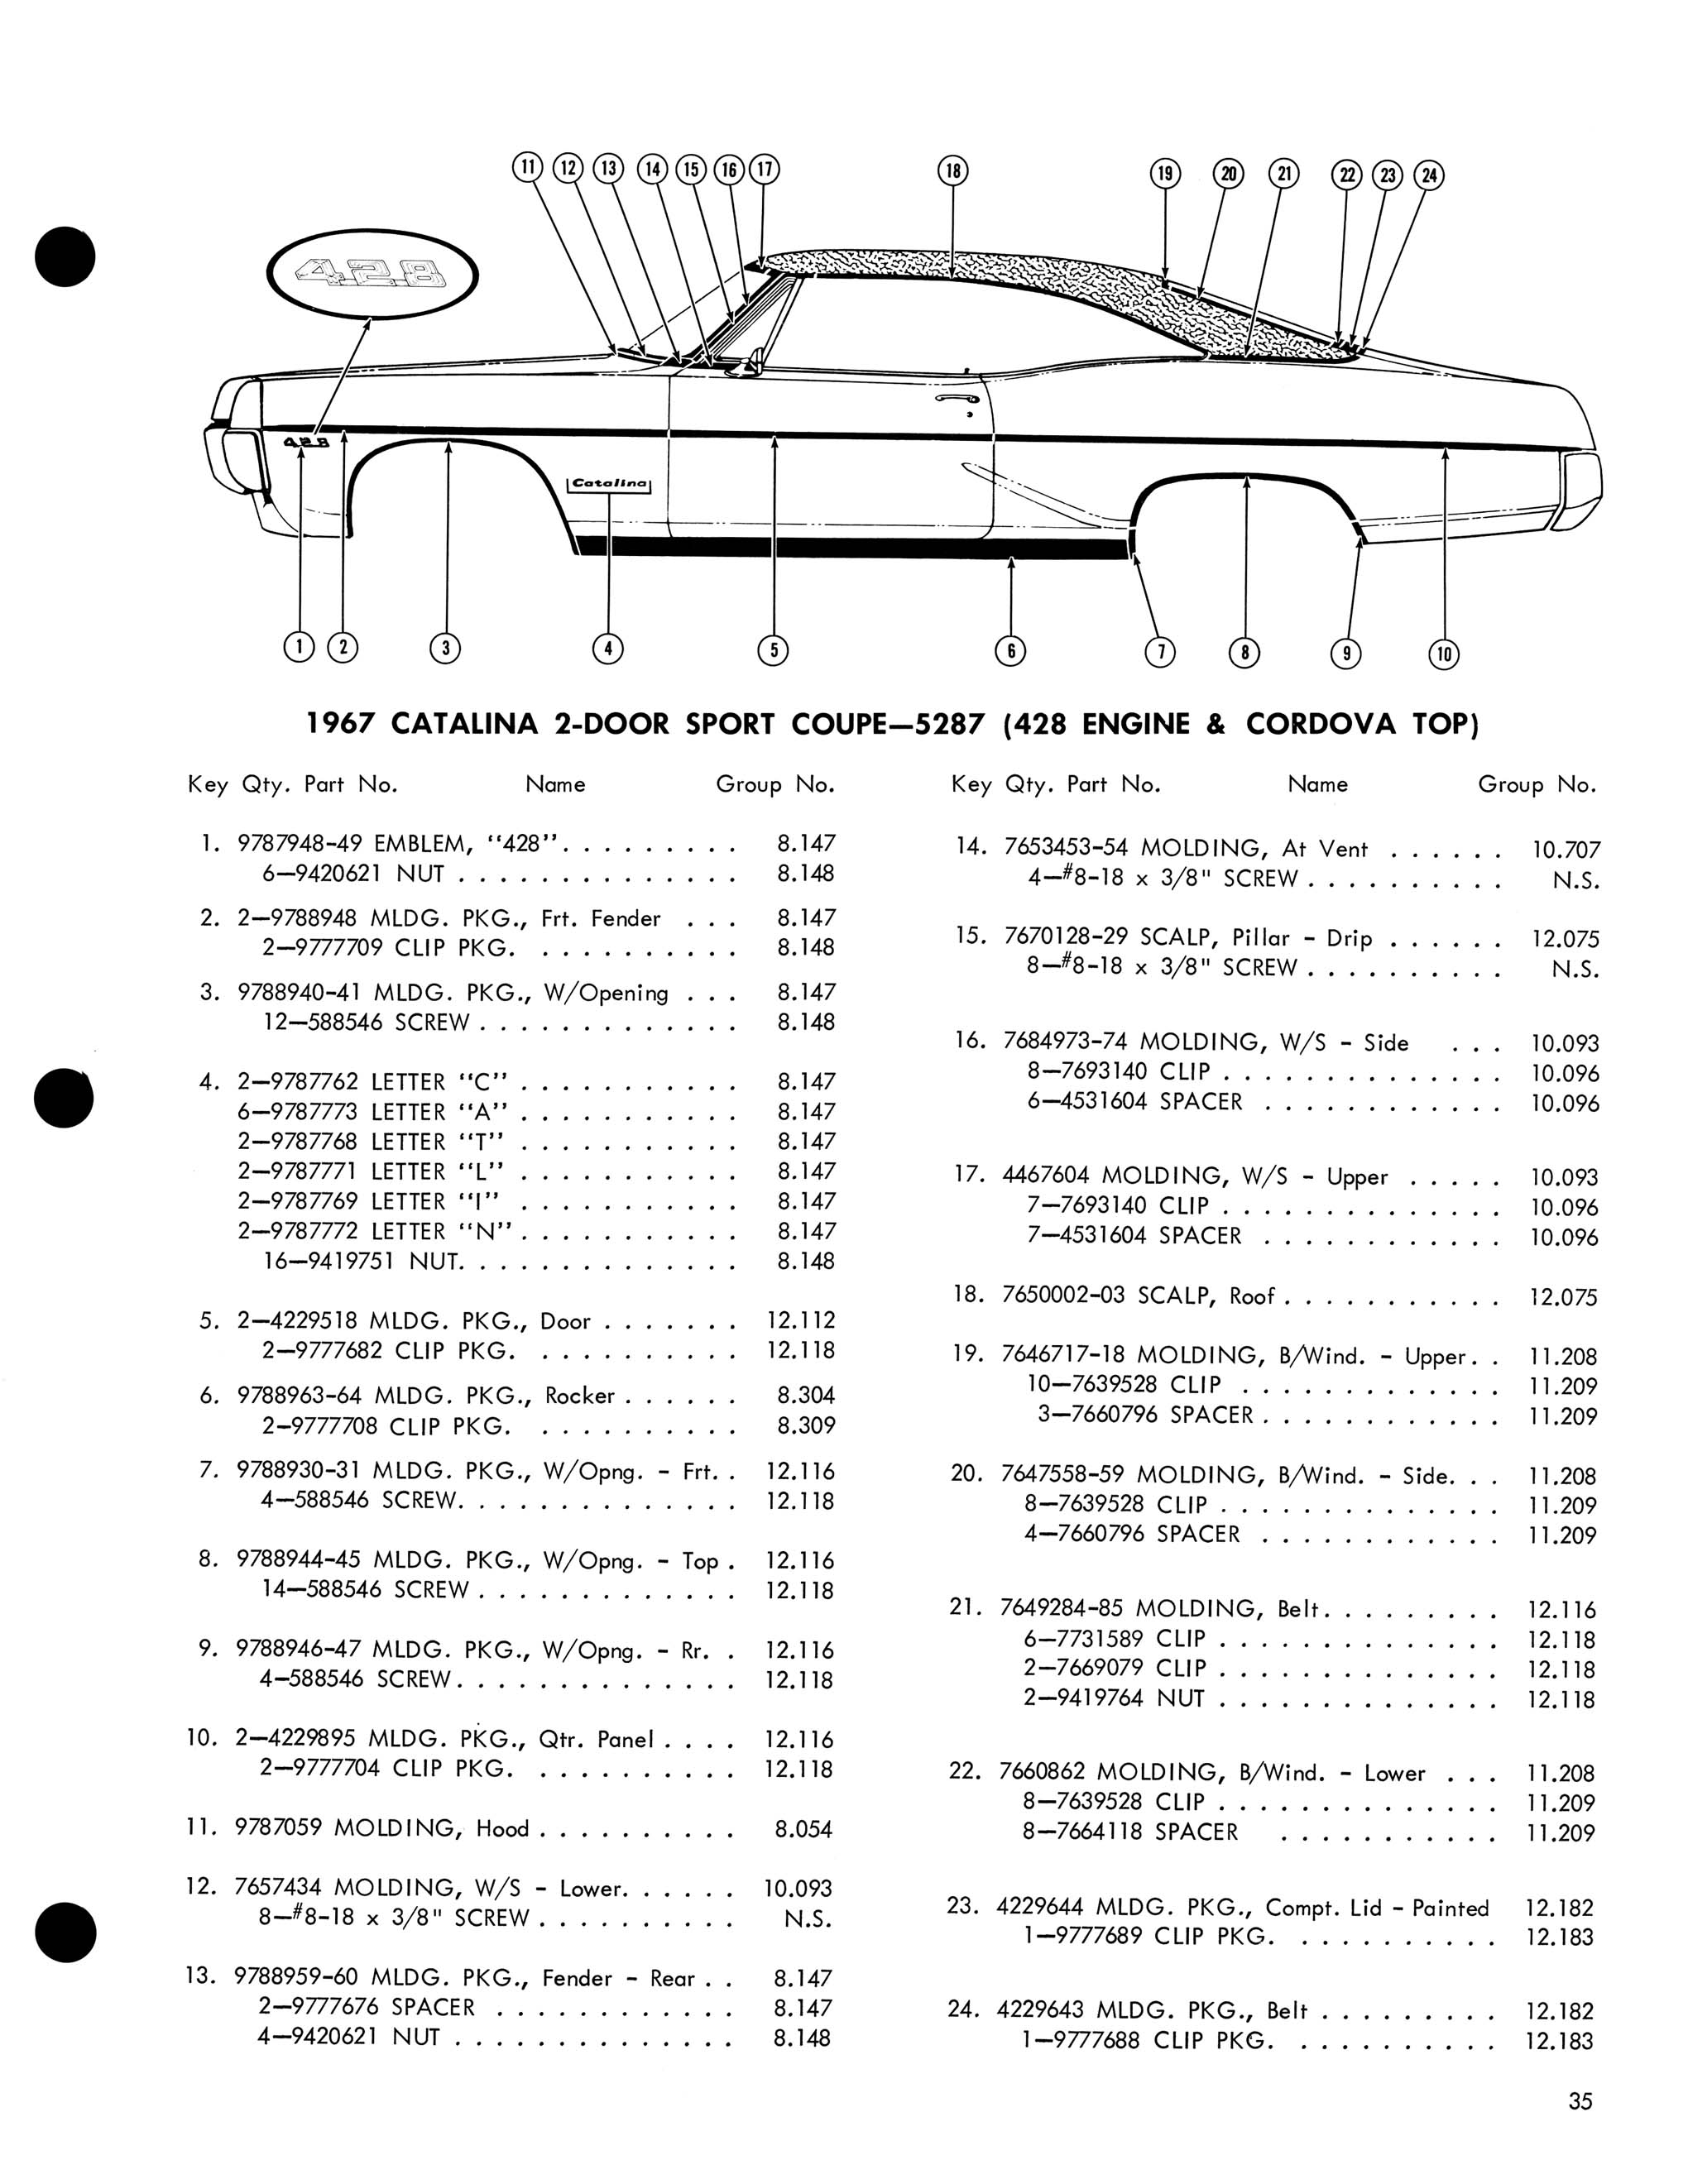 1967 Pontiac Molding and Clip Catalog-35